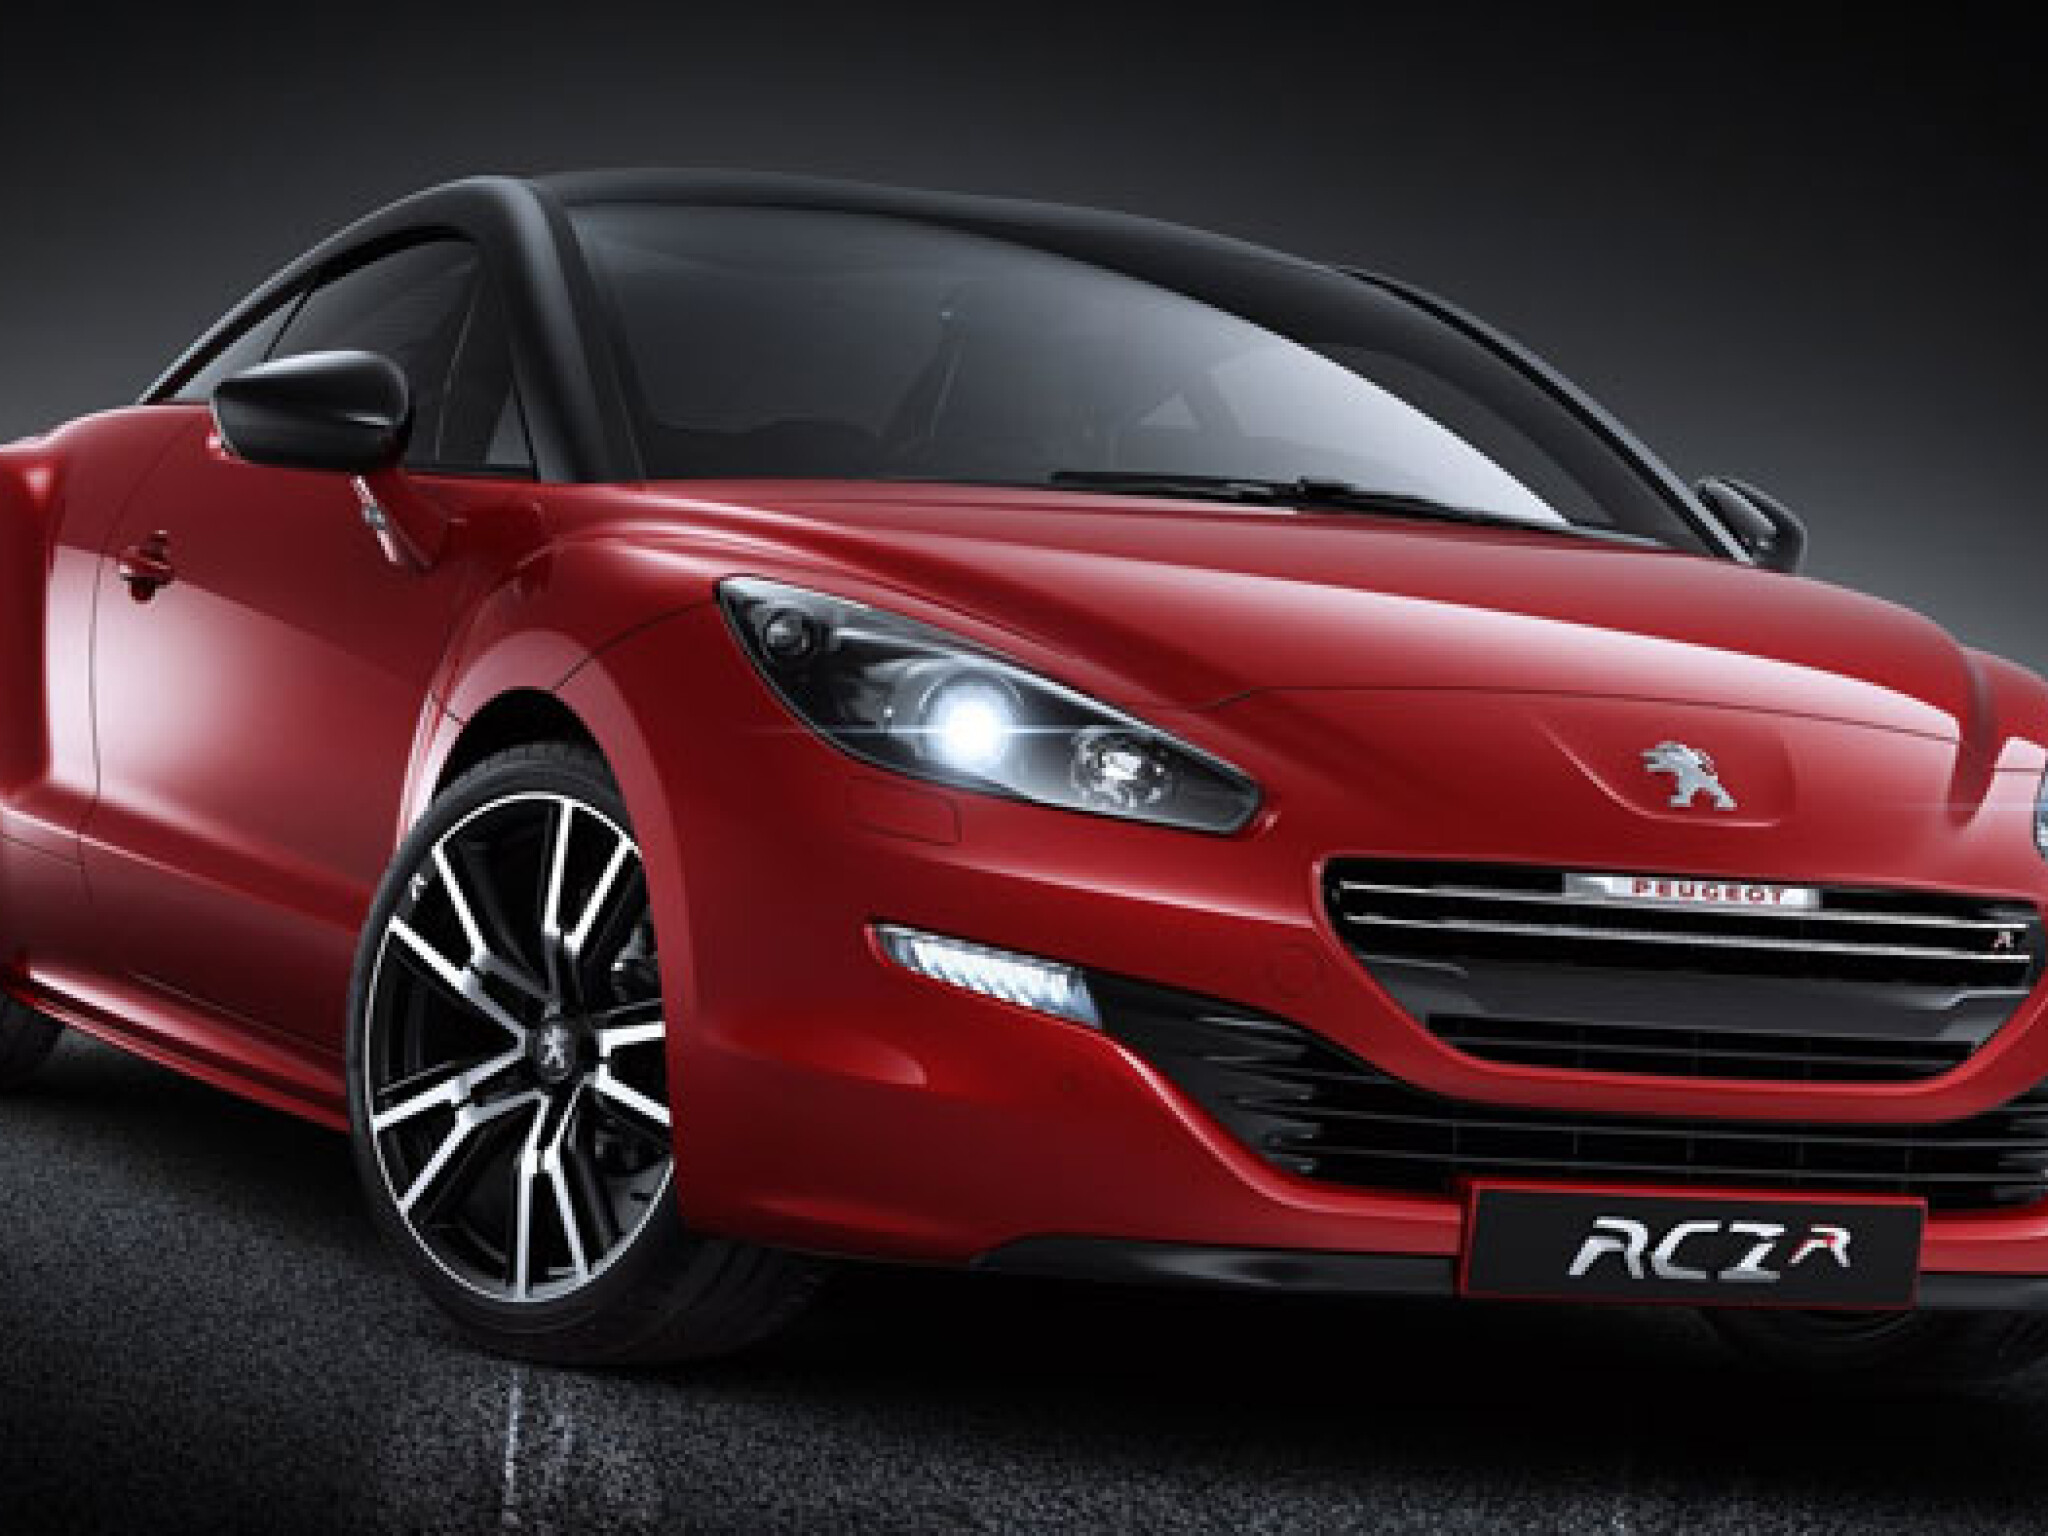 Car review: Peugeot RCZ, Motoring